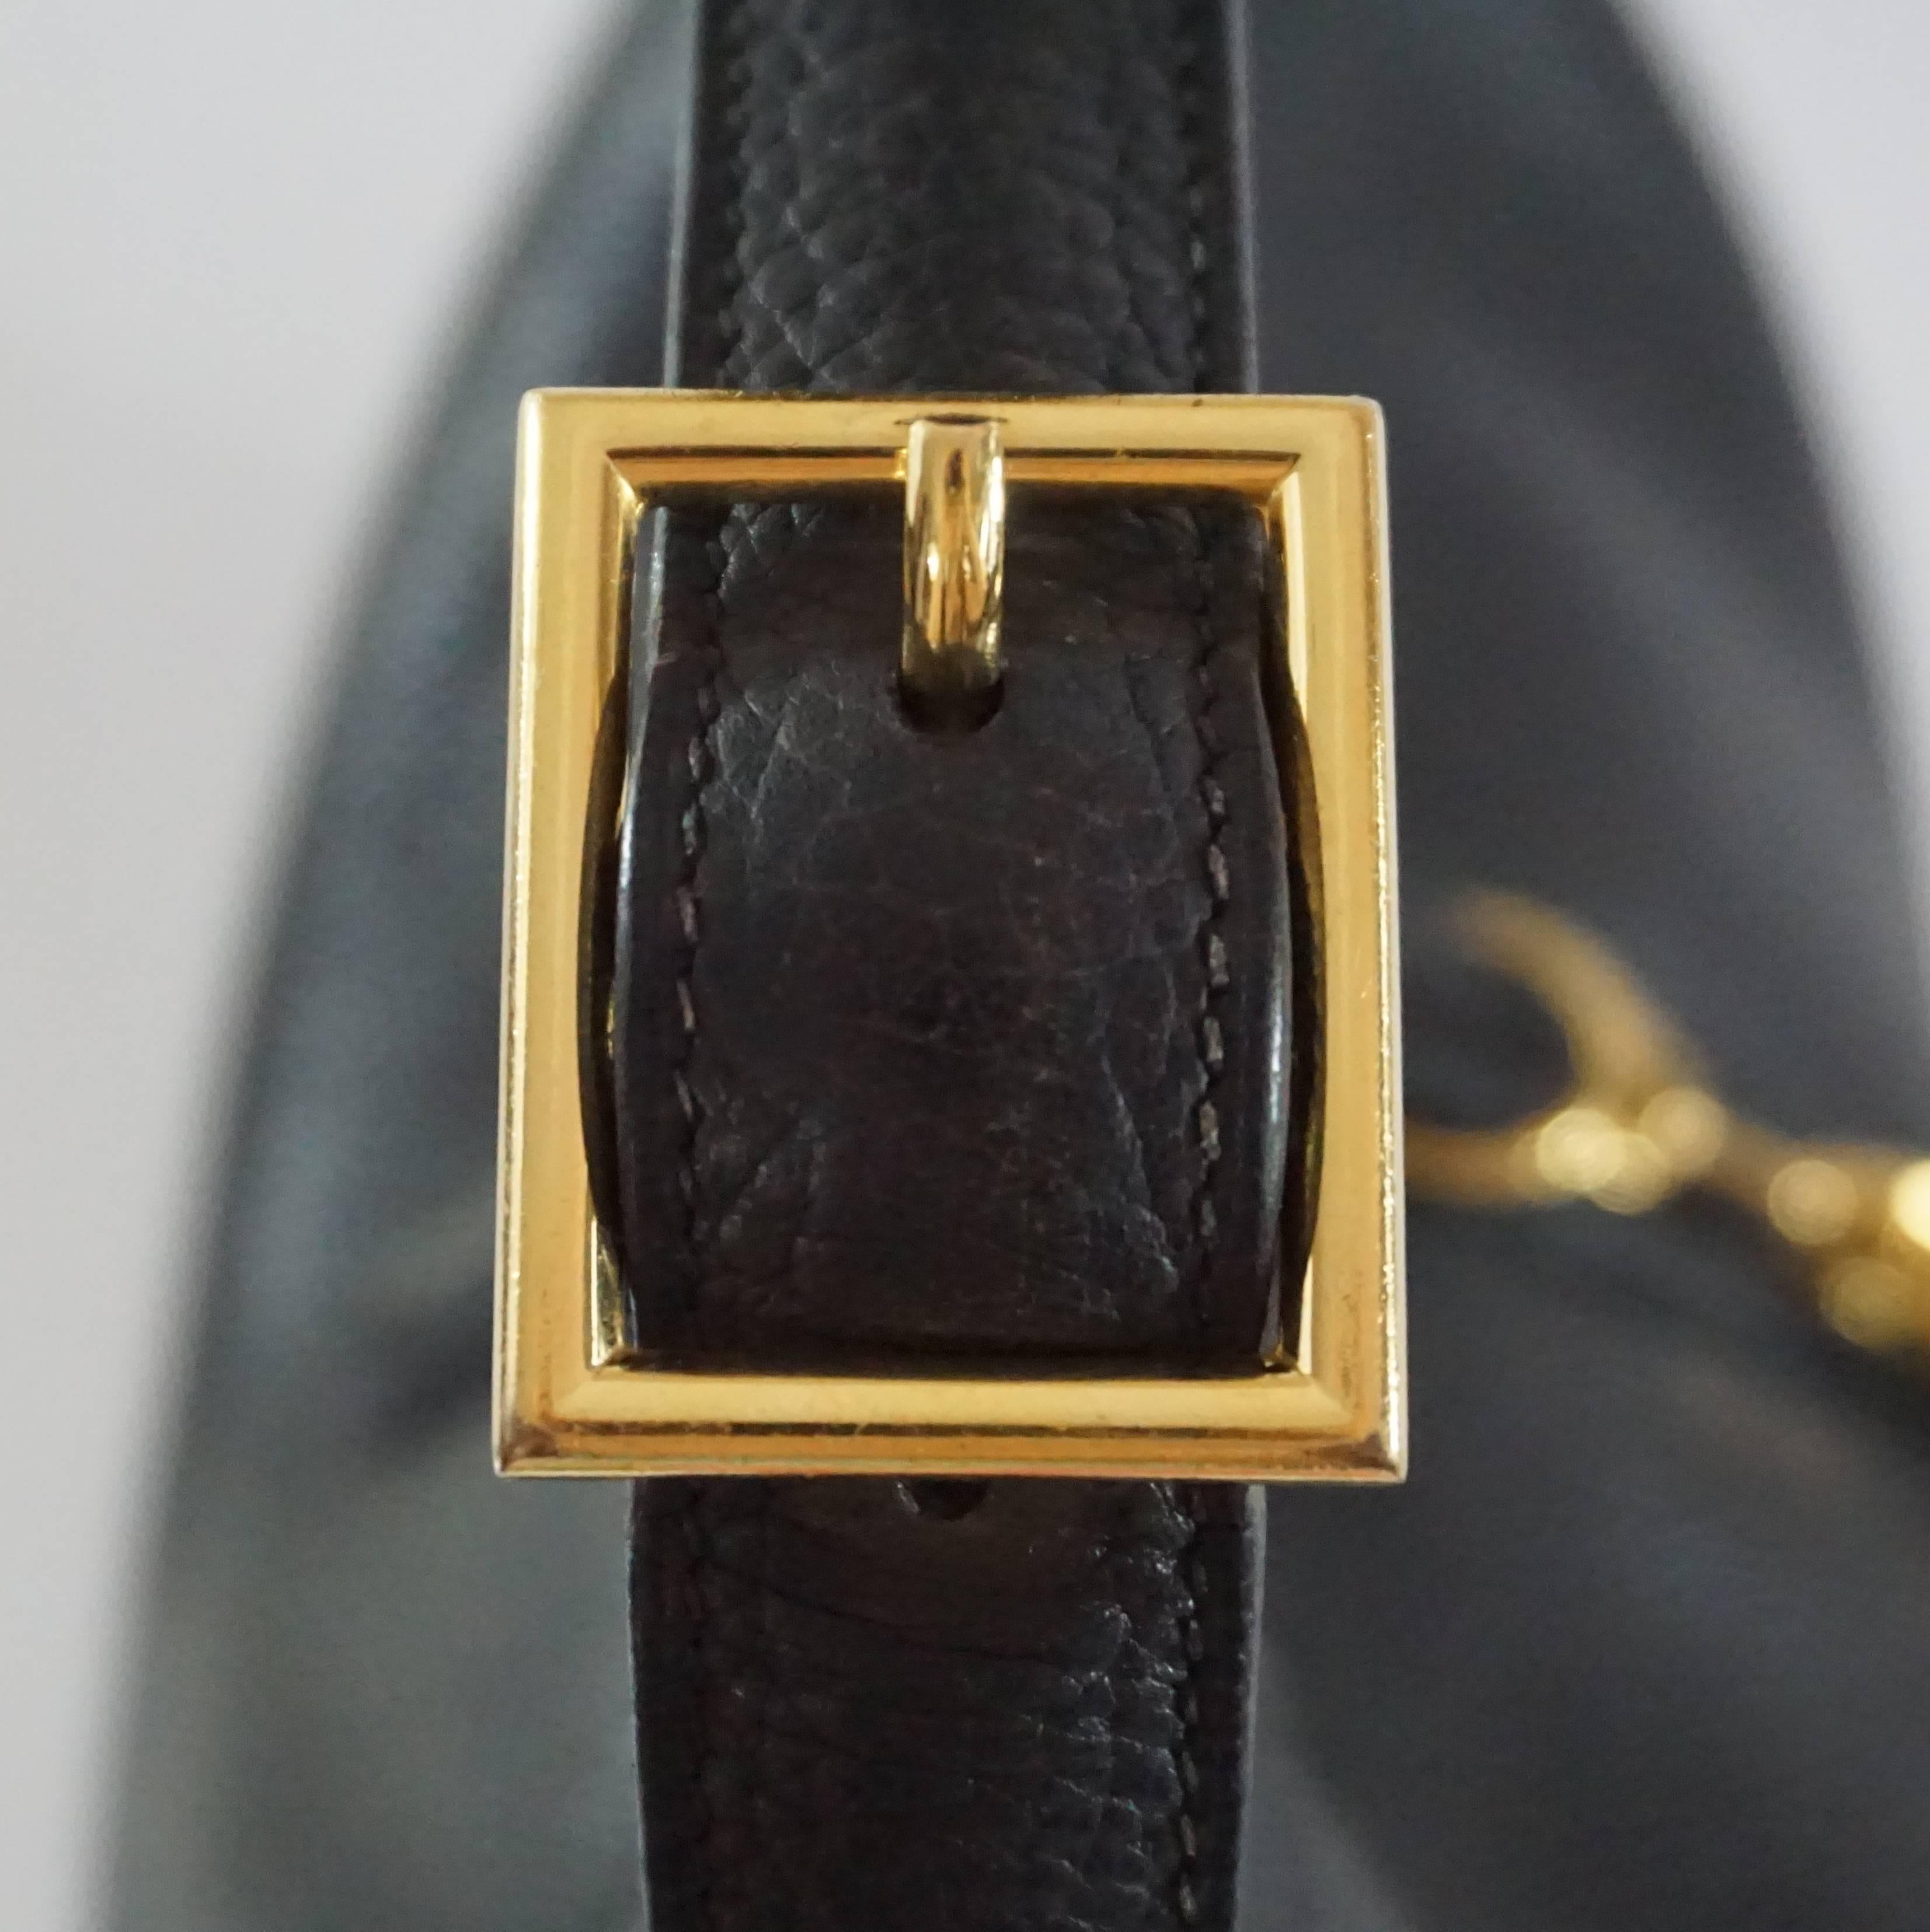 Hermes Black 35cm Togo Leather Trim Handbag - GHW - circa 2004 4